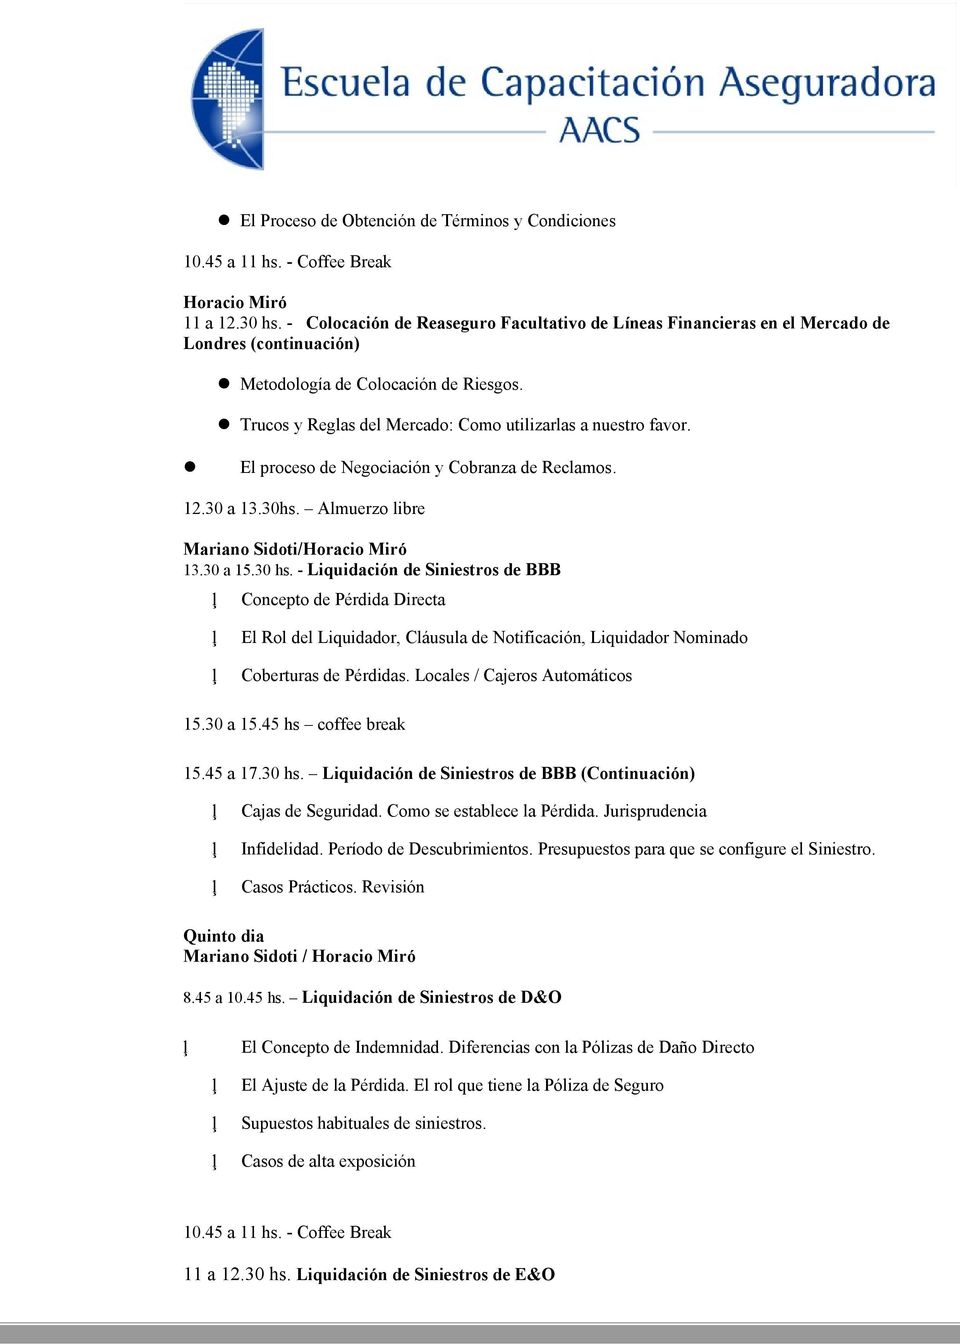 El proceso de Negociación y Cobranza de Reclamos. 12.30 a 13.30hs. Almuerzo libre Mariano Sidoti/Horacio Miró 13.30 a 15.30 hs.